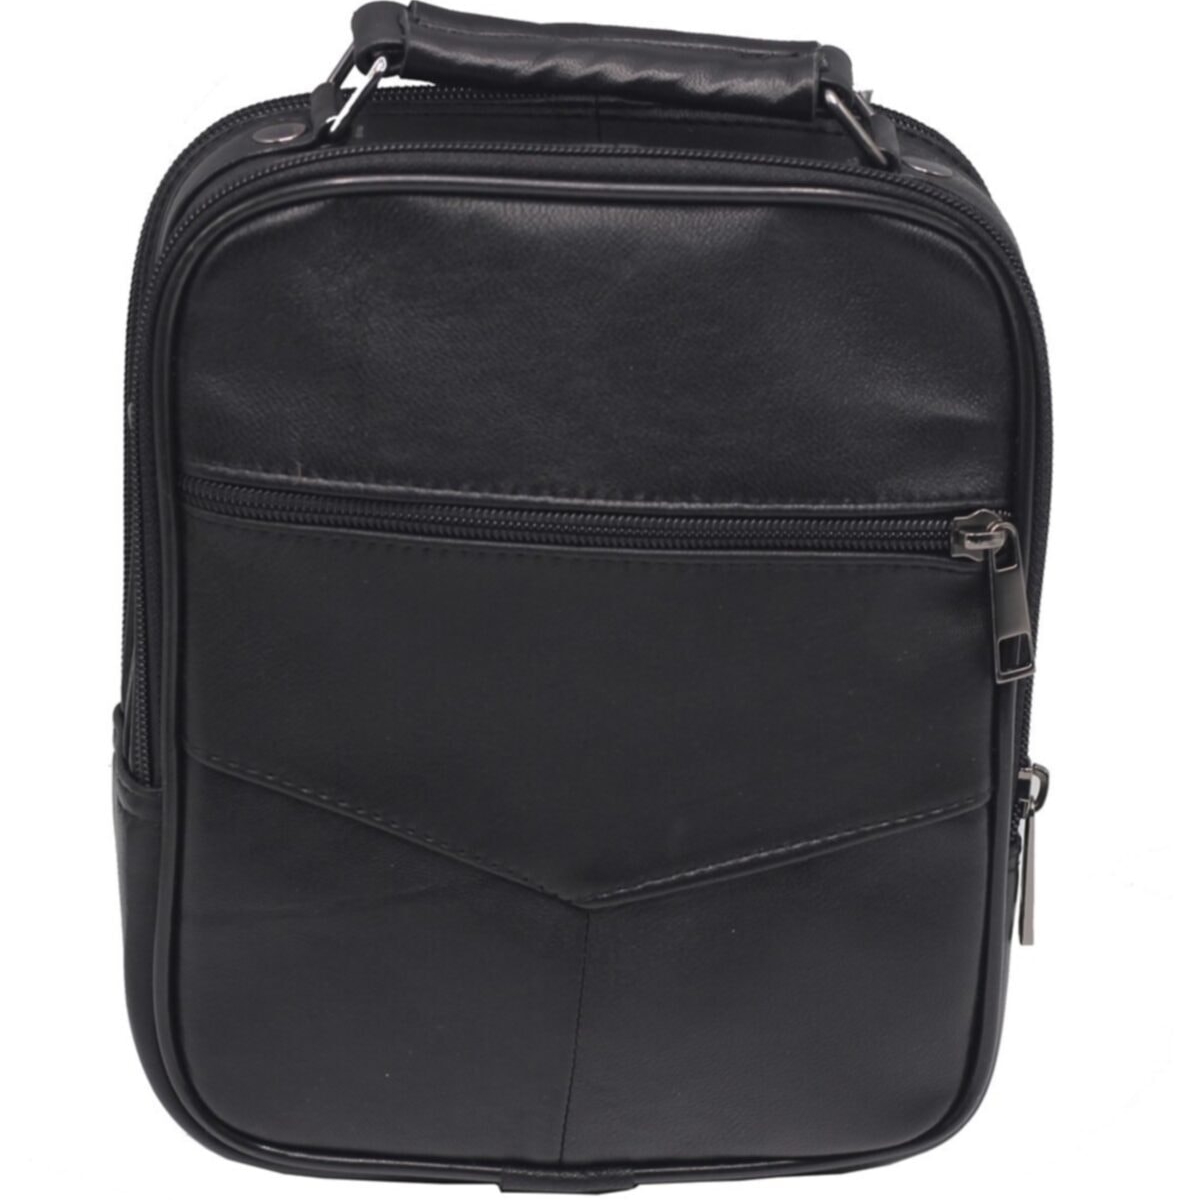 Flo buybox nw-3001 kapaklı orta boy hakiki deri kasalı erkek el ve omuz çantası SİYAH. 1